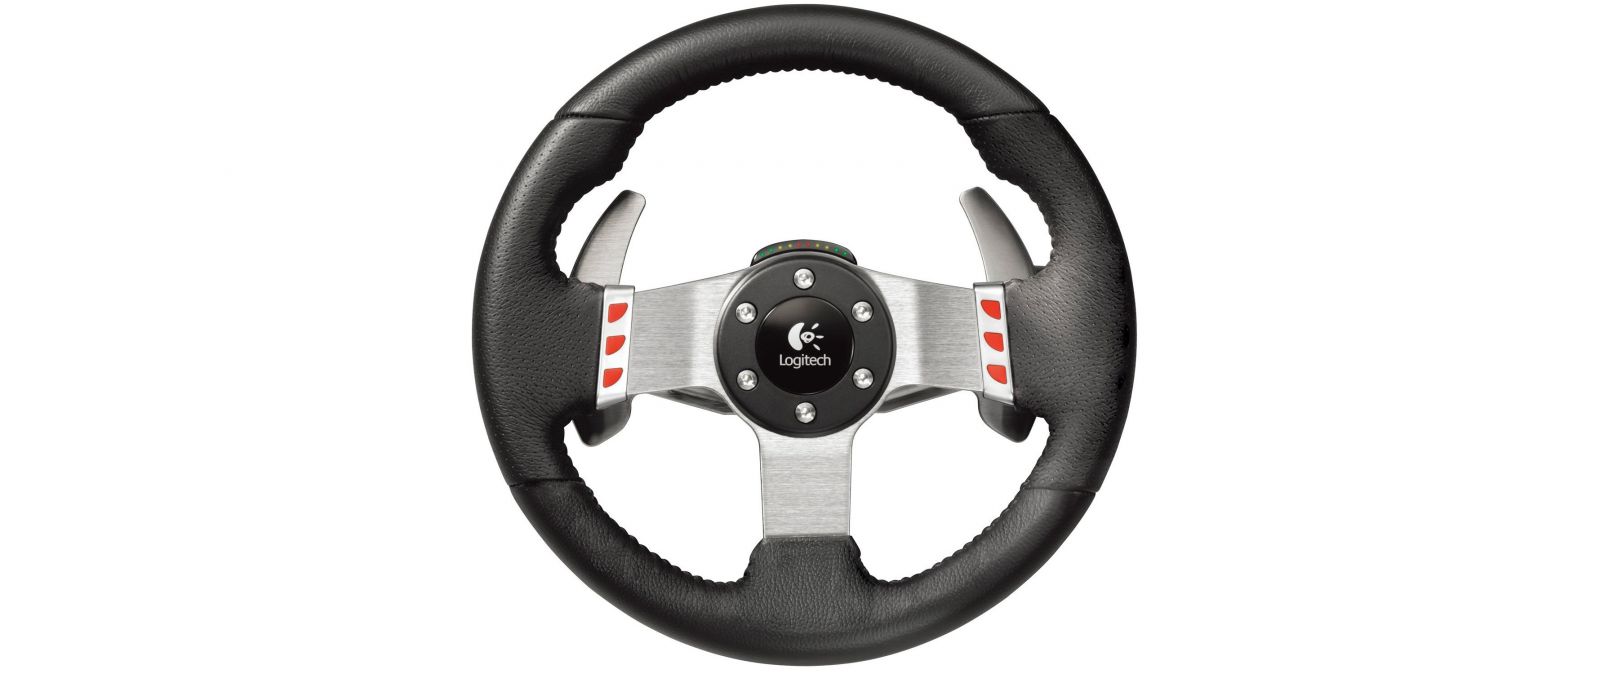 Vô Lăng chơi game Logitech G27 Racing Wheel